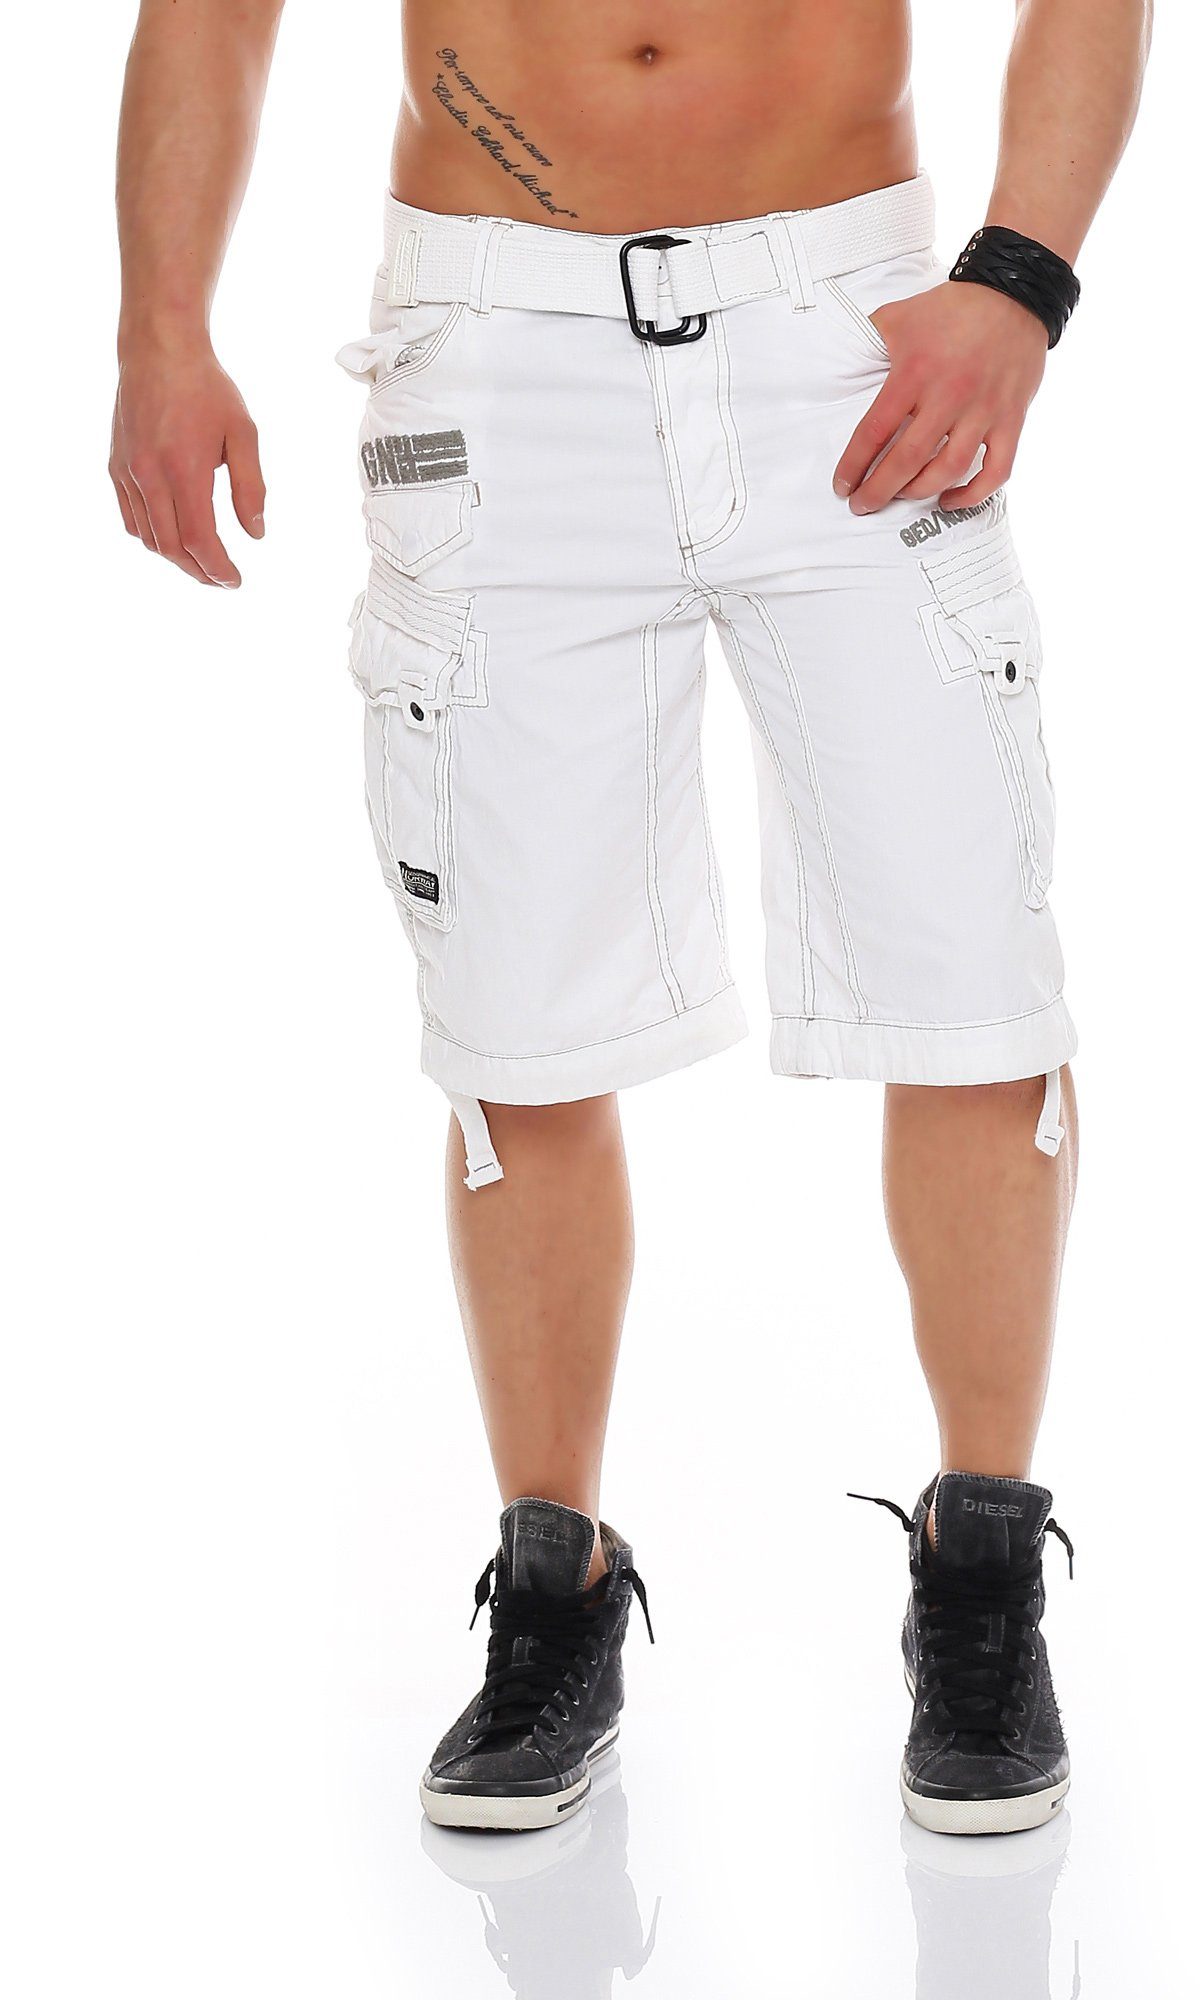 Geographical Norway Cargoshorts Herren Shorts PANORAMIQUE (mit abnehmbarem Gürtel) Shorts, kurze Hose, unifarben / camouflage white